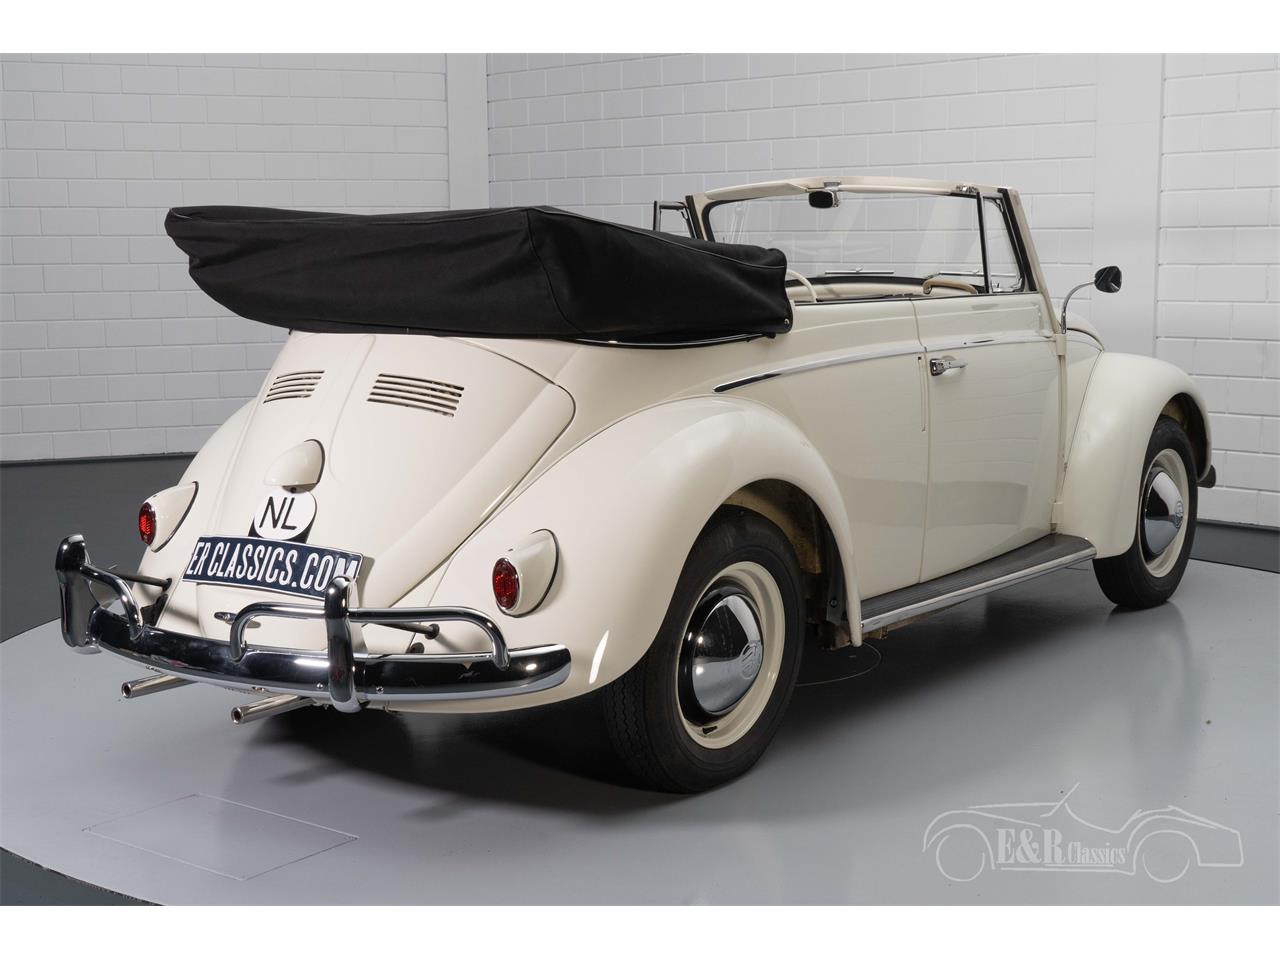 1960 Volkswagen Beetle for Sale